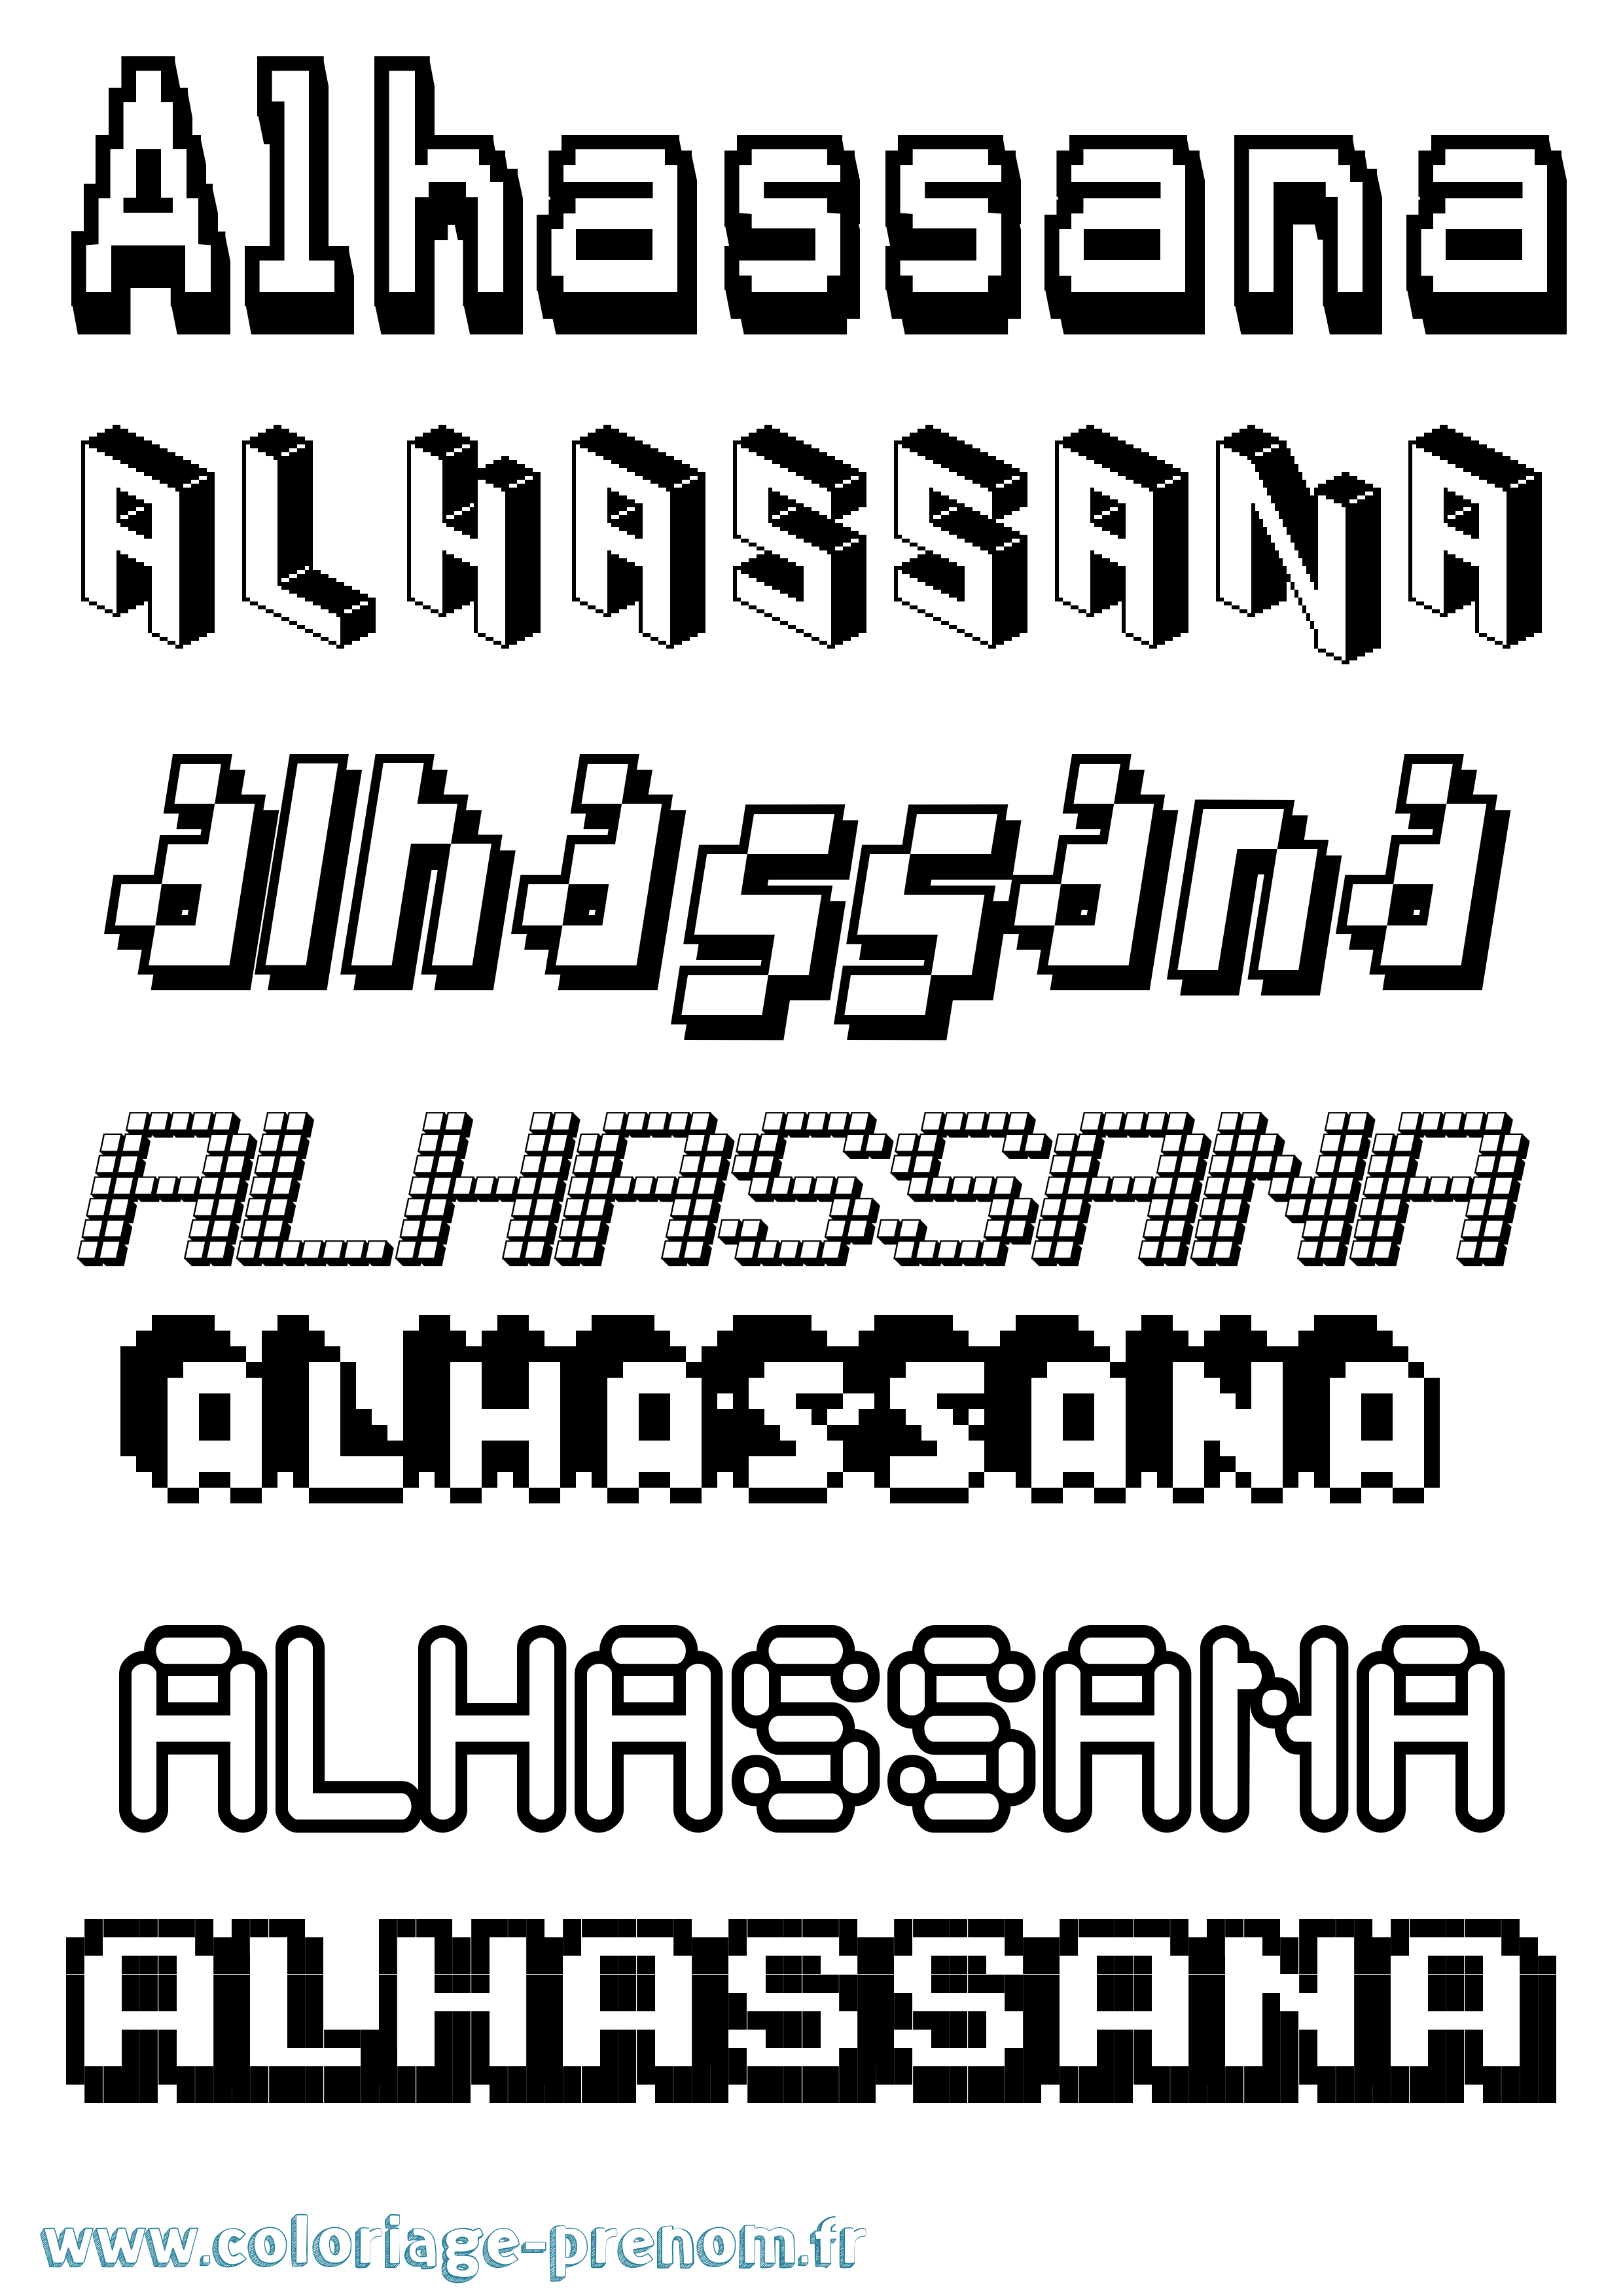 Coloriage prénom Alhassana Pixel